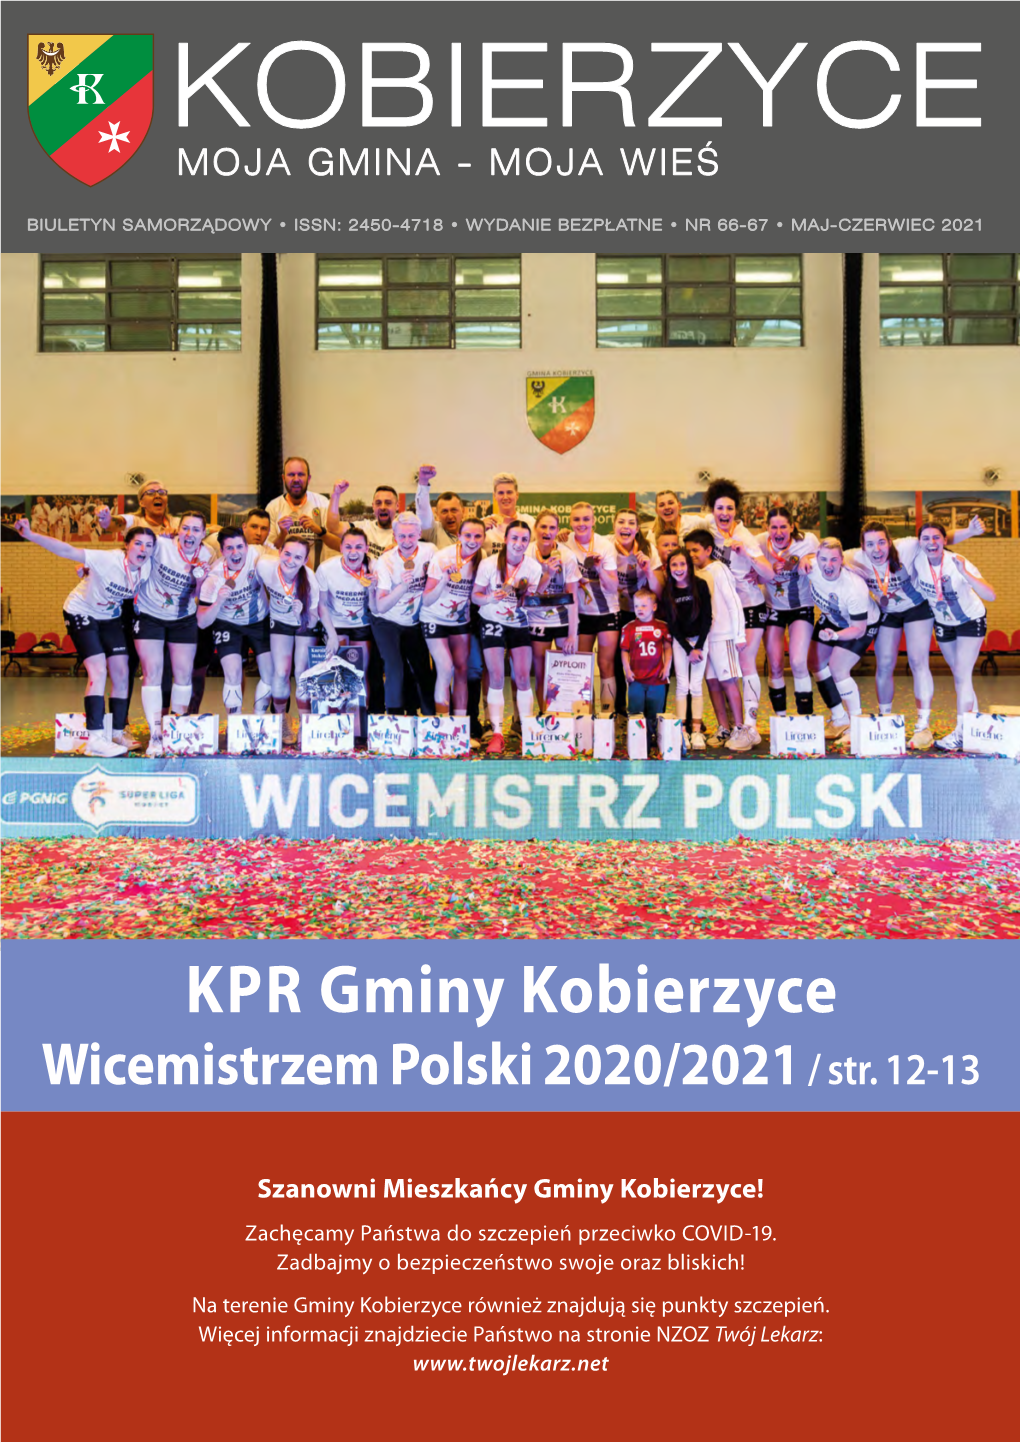 KPR Gminy Kobierzyce Wicemistrzem Polski 2020/2021 / Str